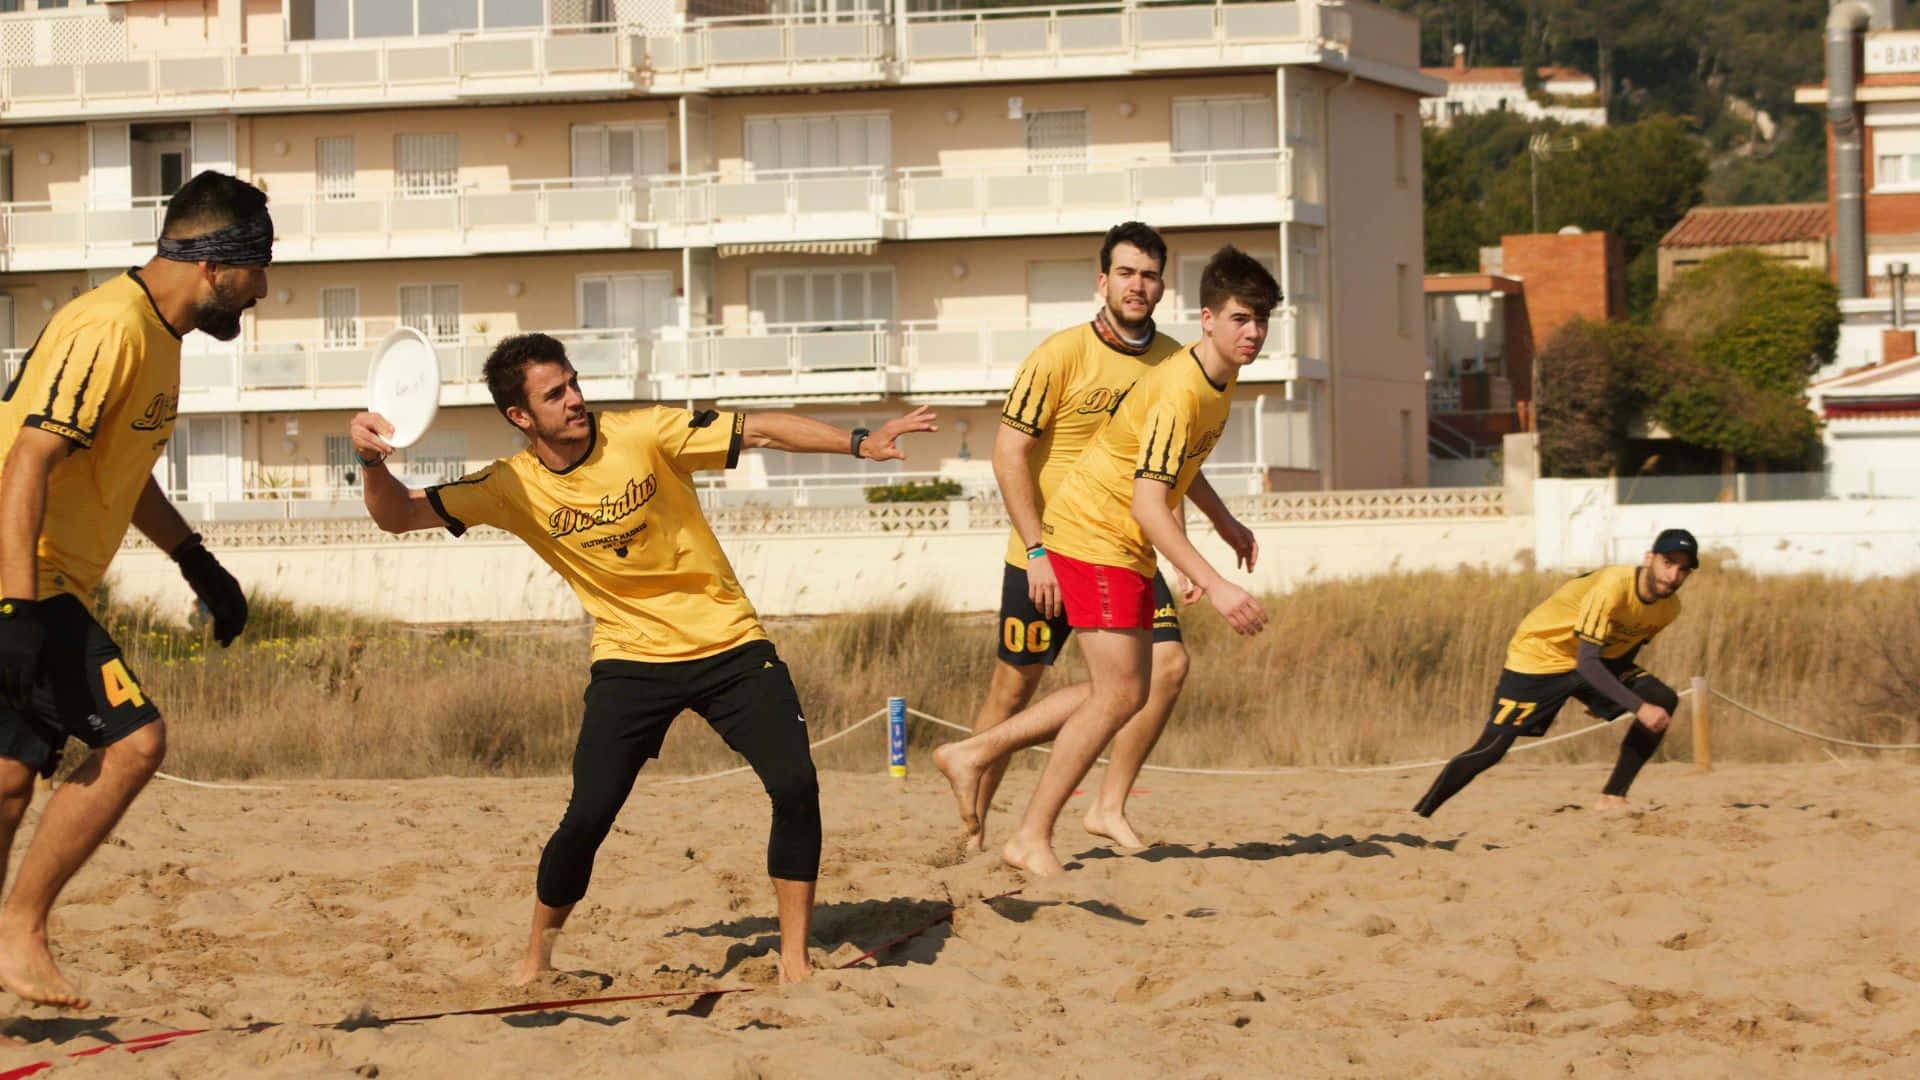 Einegruppe Männer Spielt Frisbee Am Strand.